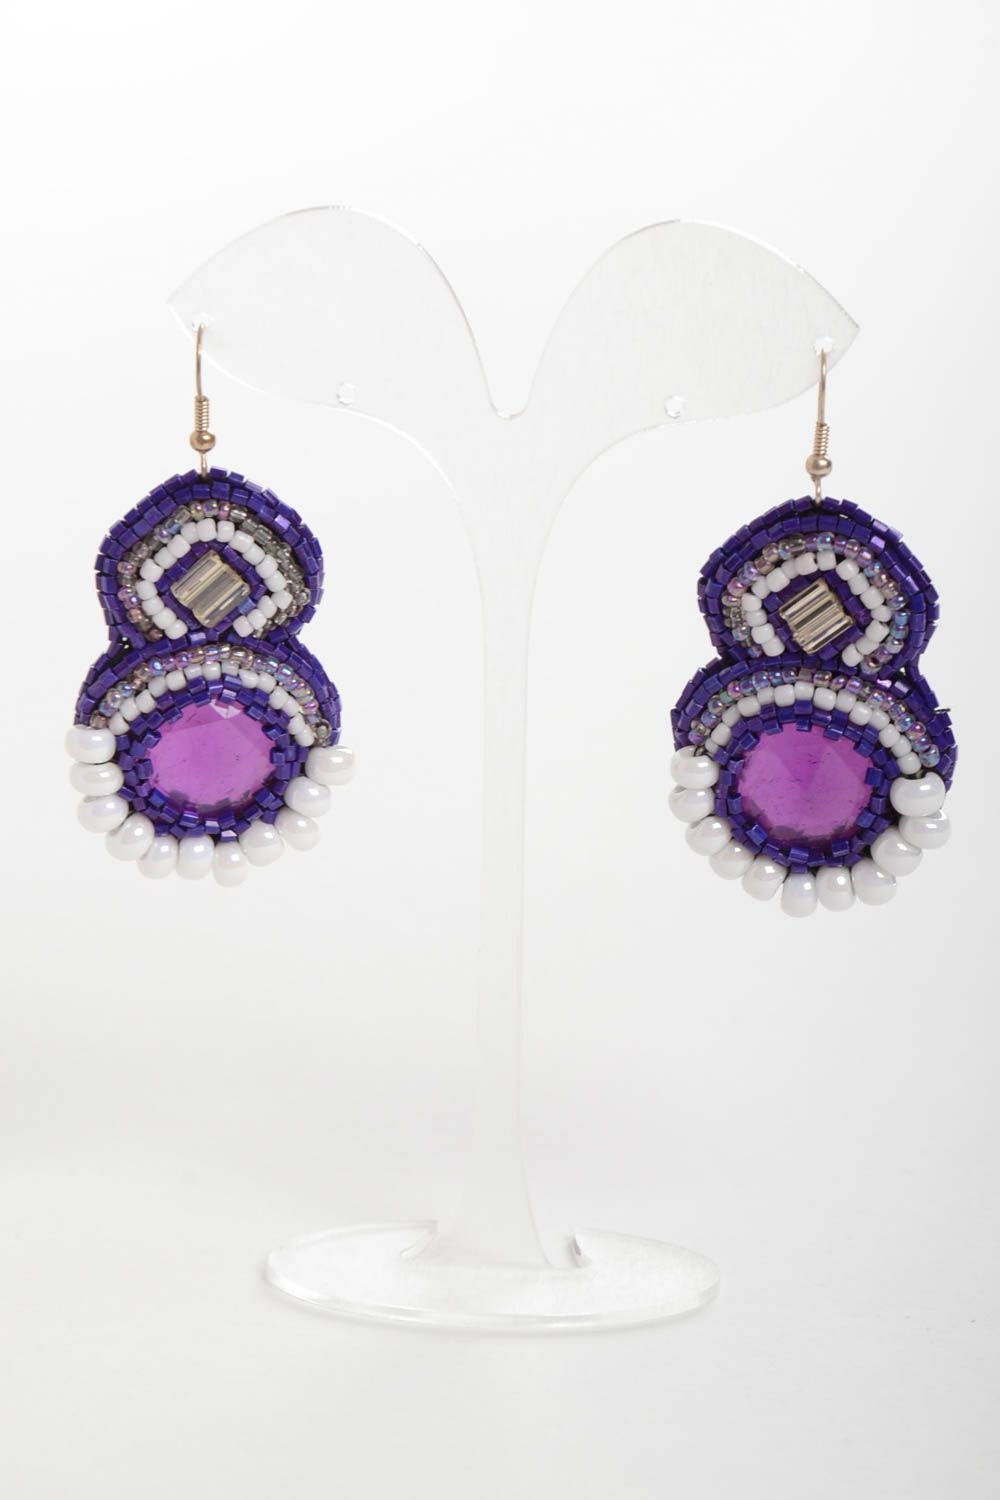 Фиолетовые серьги из бисера со стразами ручной работы оригинальные красивые фото 2